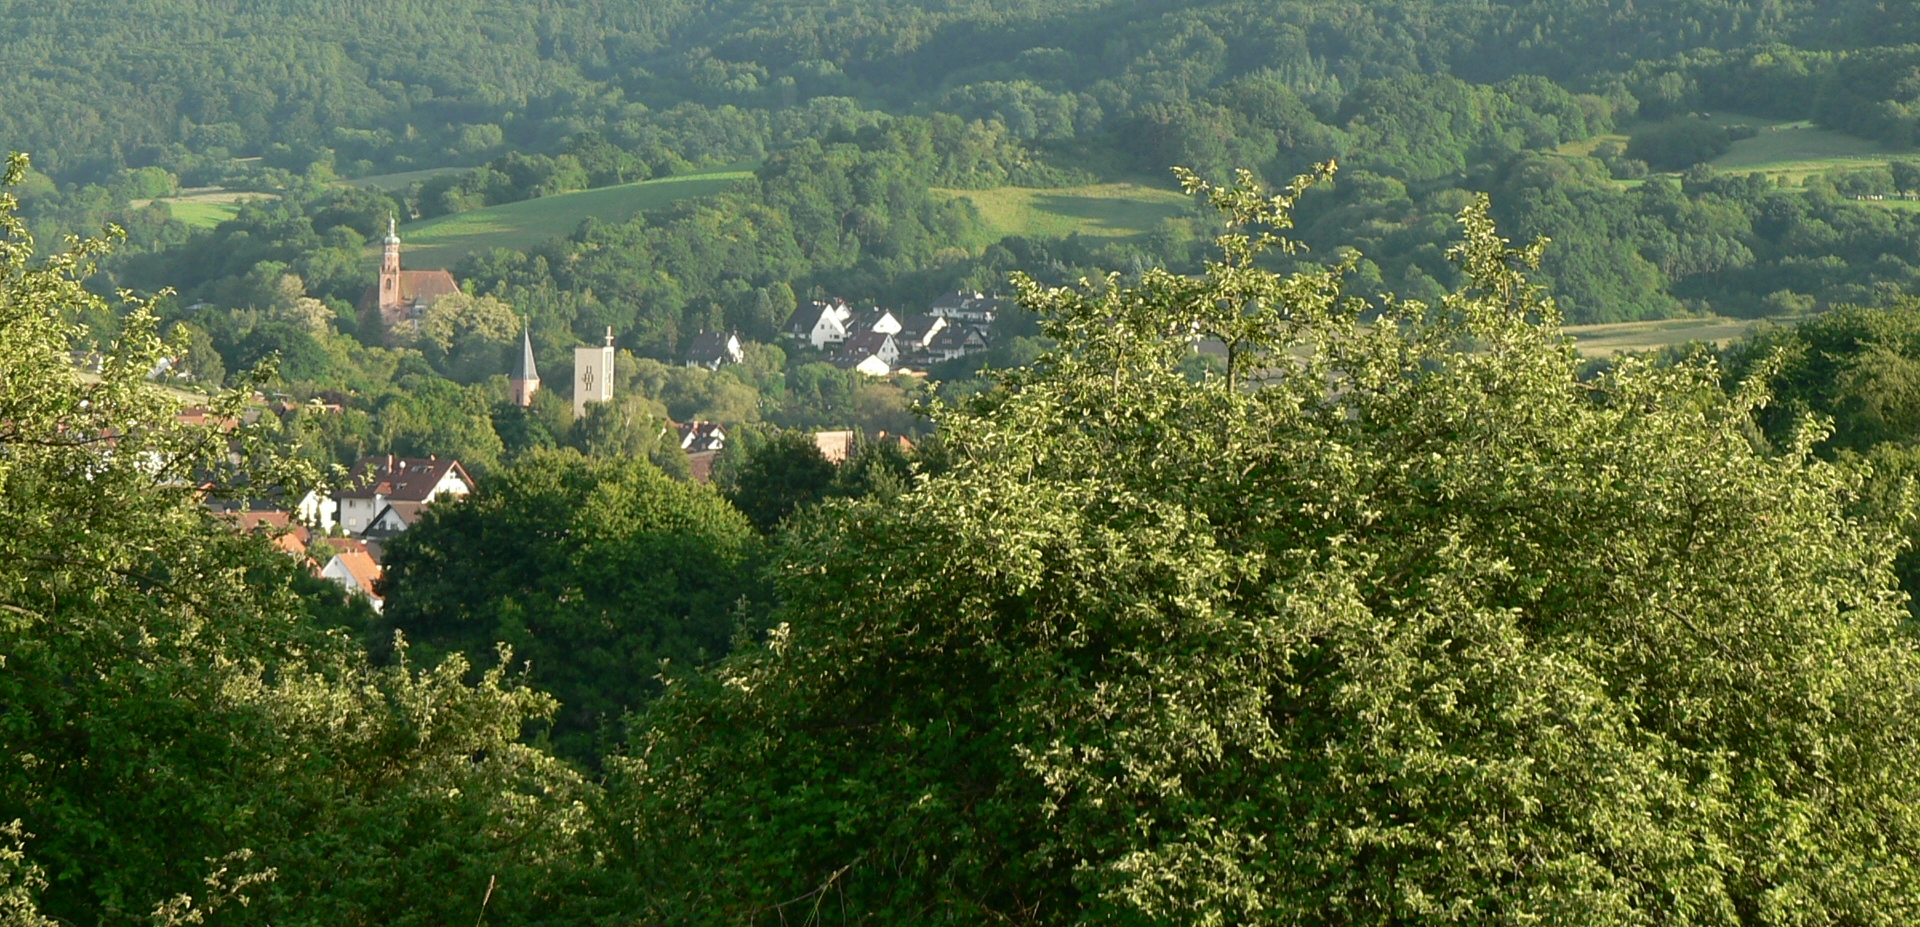 Headerbild der Gemeinde Bessenbach